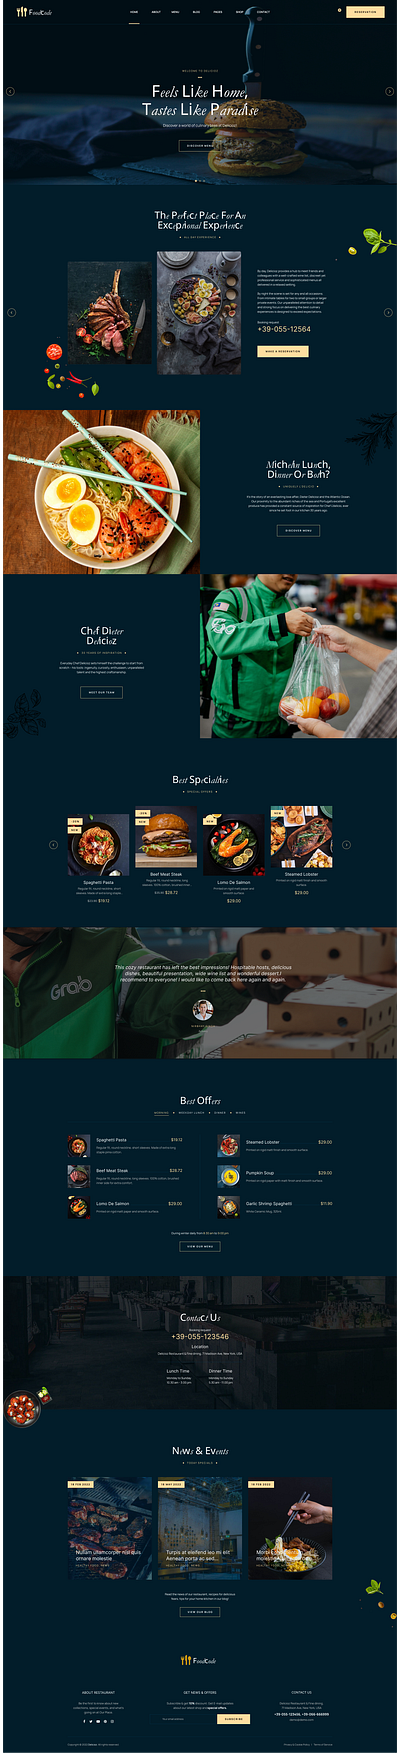 Premium Restaurant Website Design mobile app new ui ux website website design